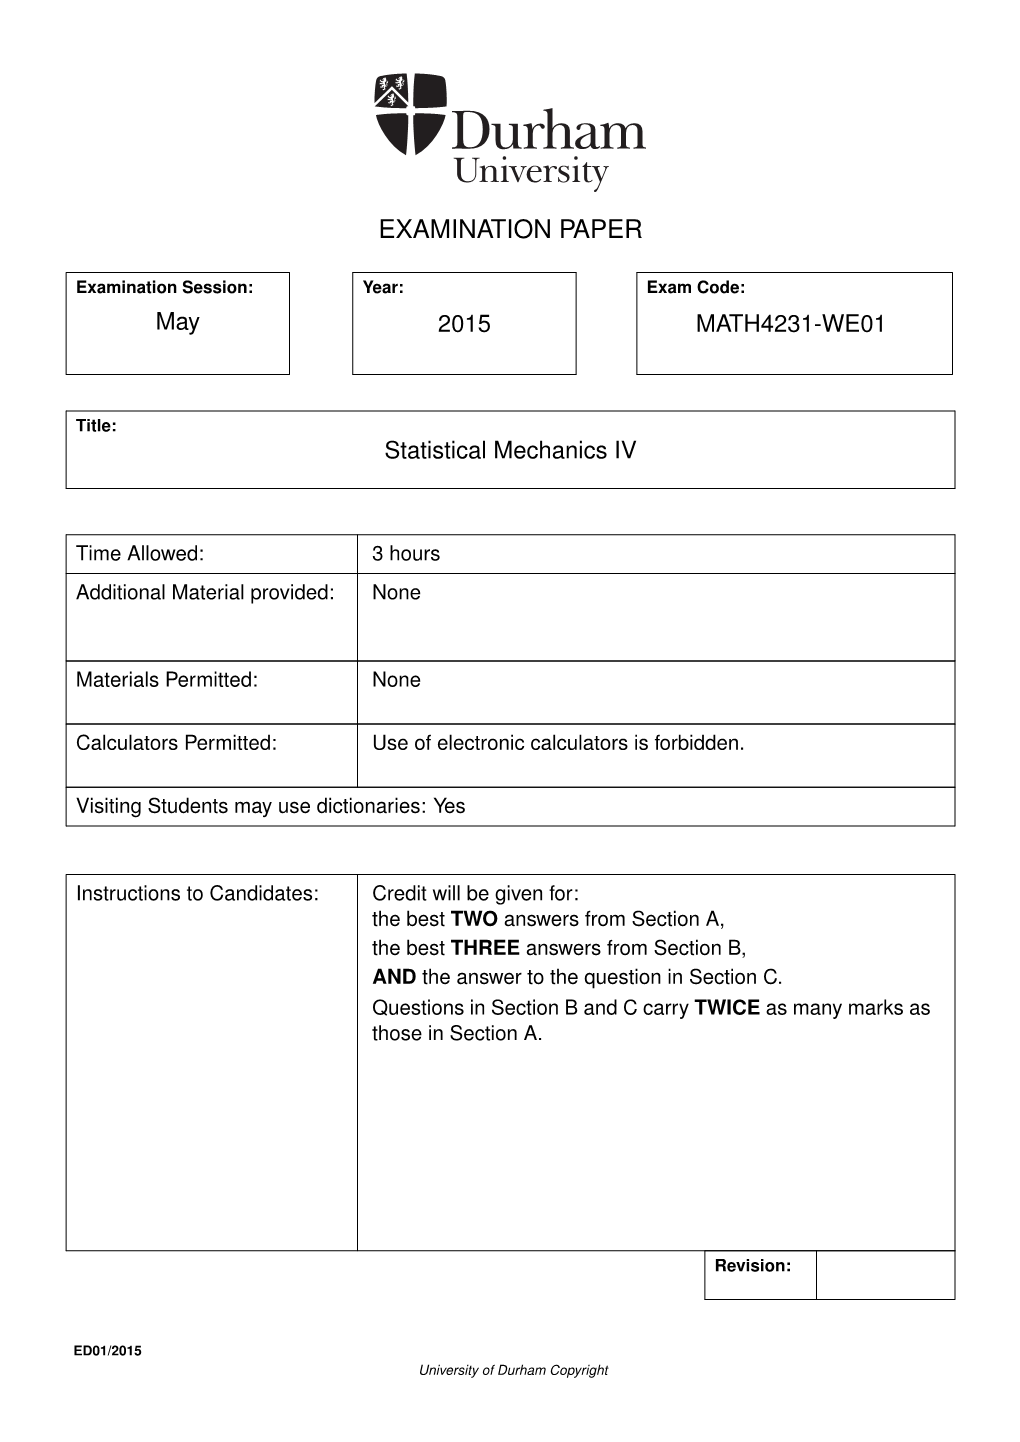 Examination Paper